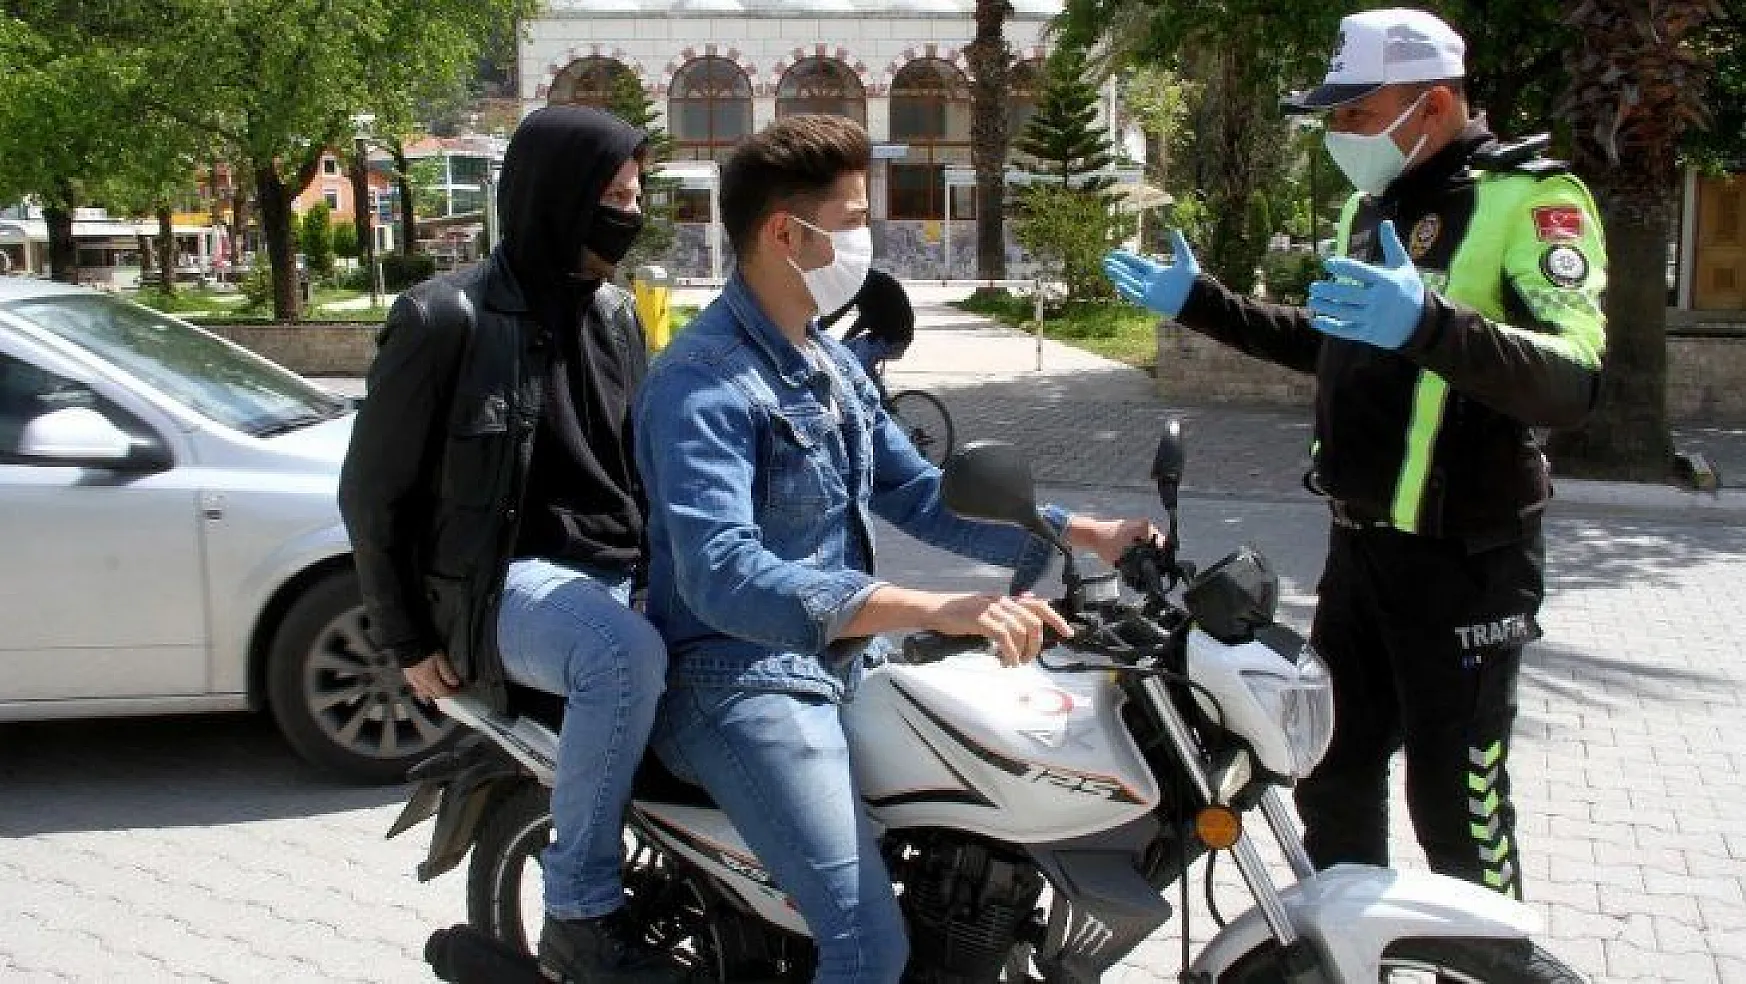 Muğla'da motosiklete 2 kişi binmek yasaklandı